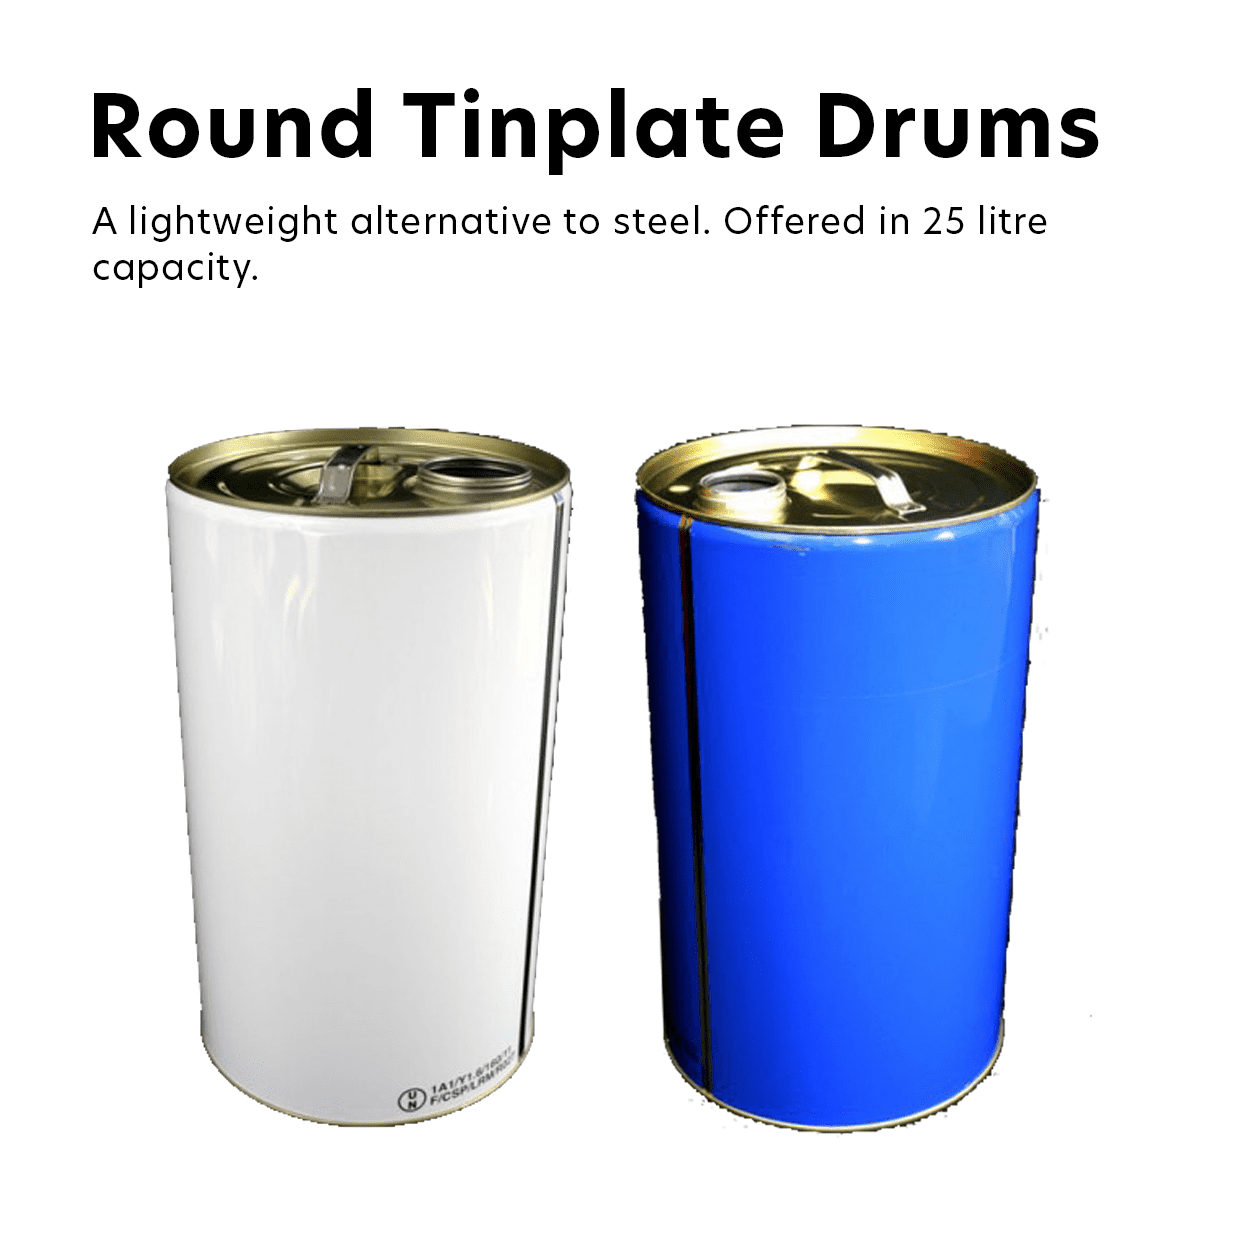 Round Tinplate Drums